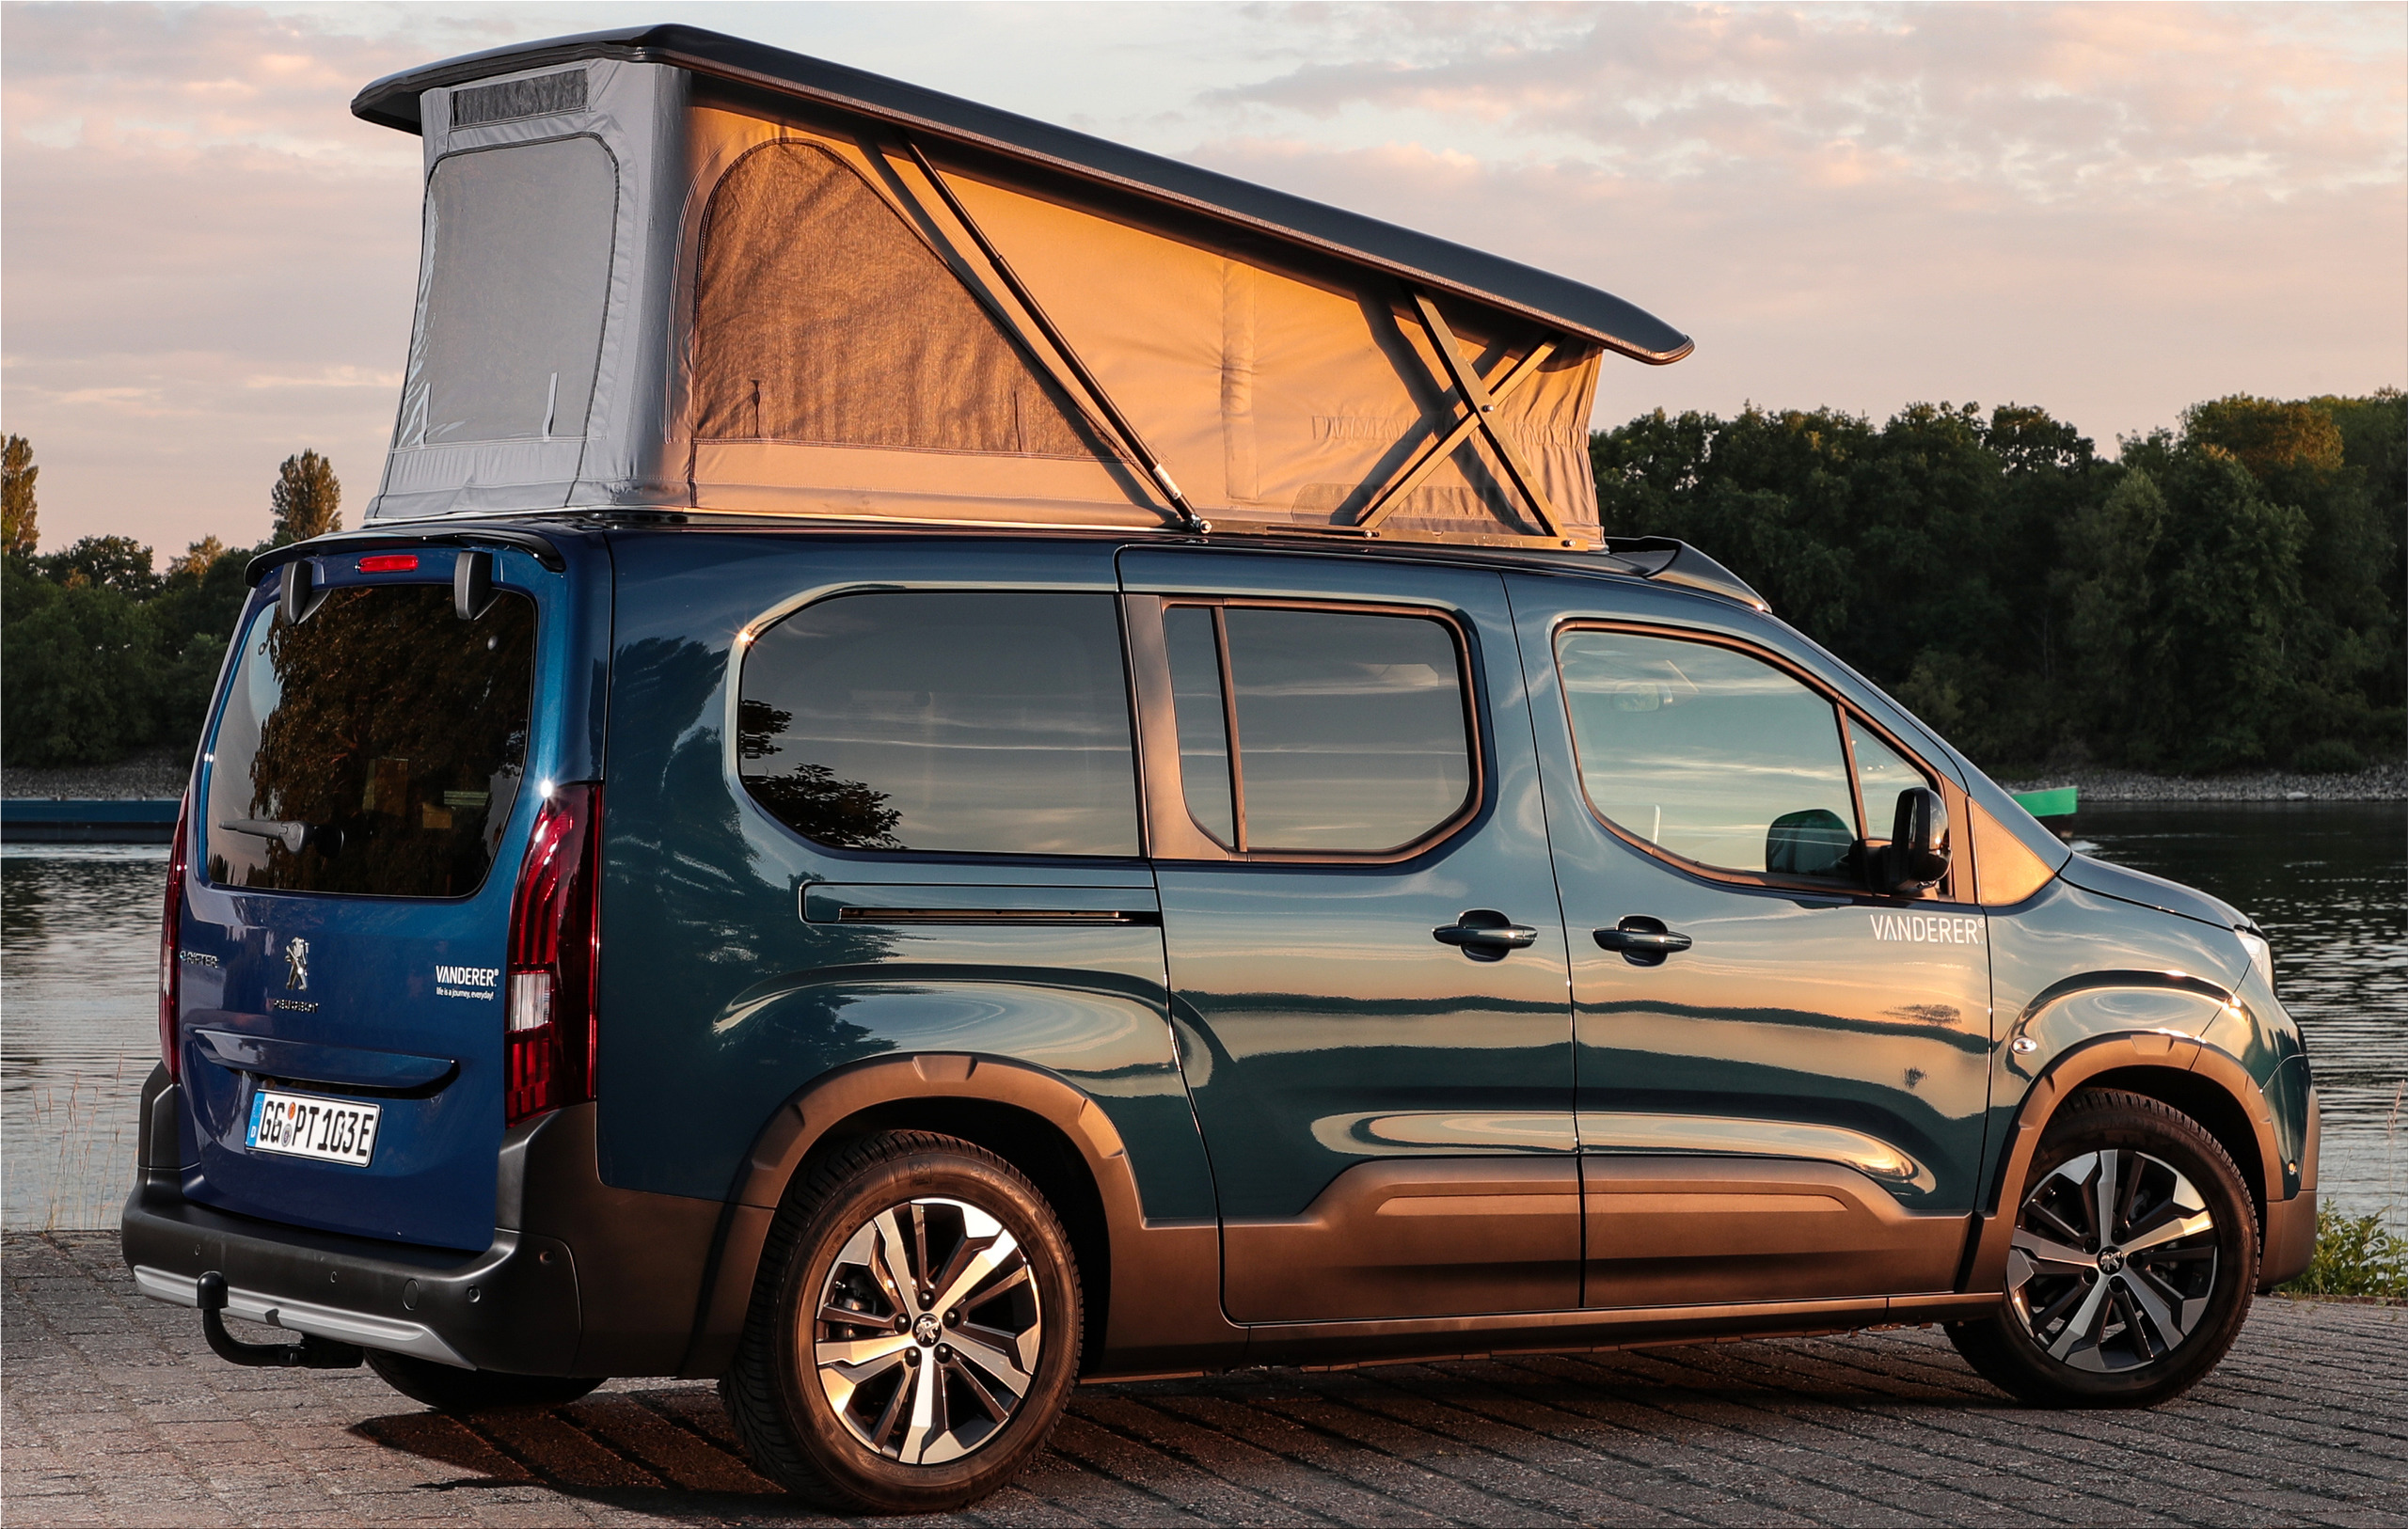 The new Peugeot e-Rifter VANDERER electric campervan for weekend